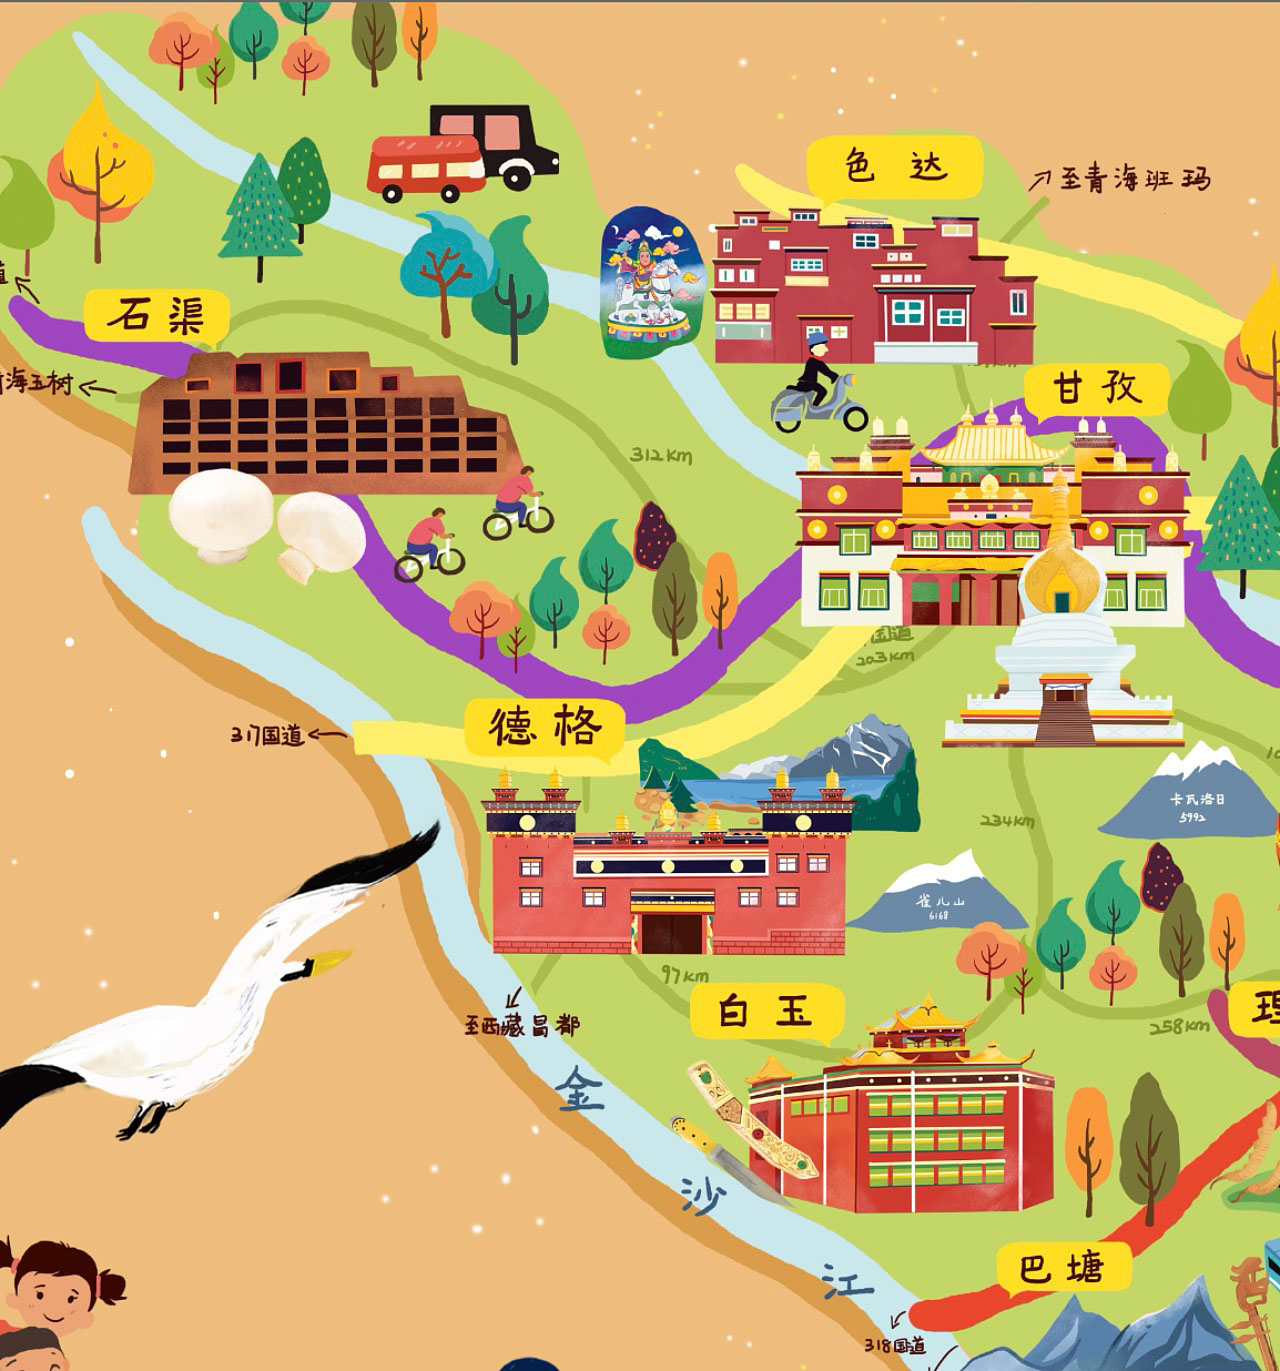 西流河镇手绘地图景区的文化宝库